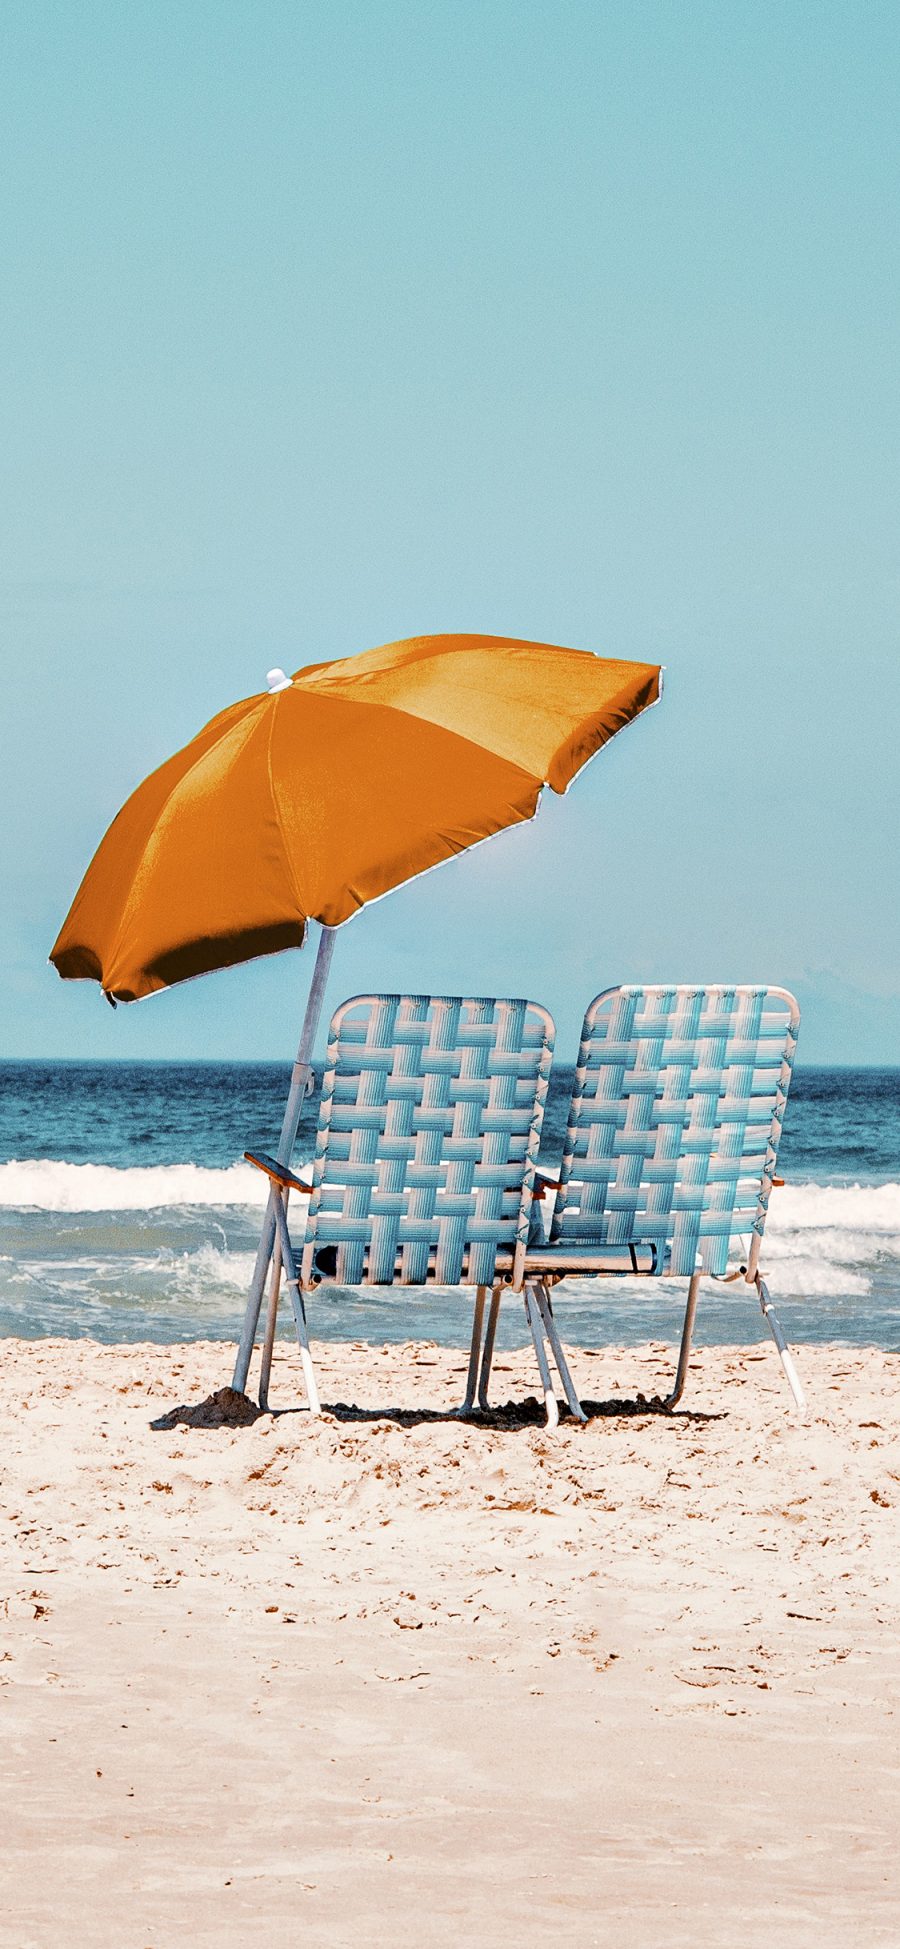 [2436×1125]沙滩 躺椅 遮阳伞 度假 海边 大海 苹果手机壁纸图片